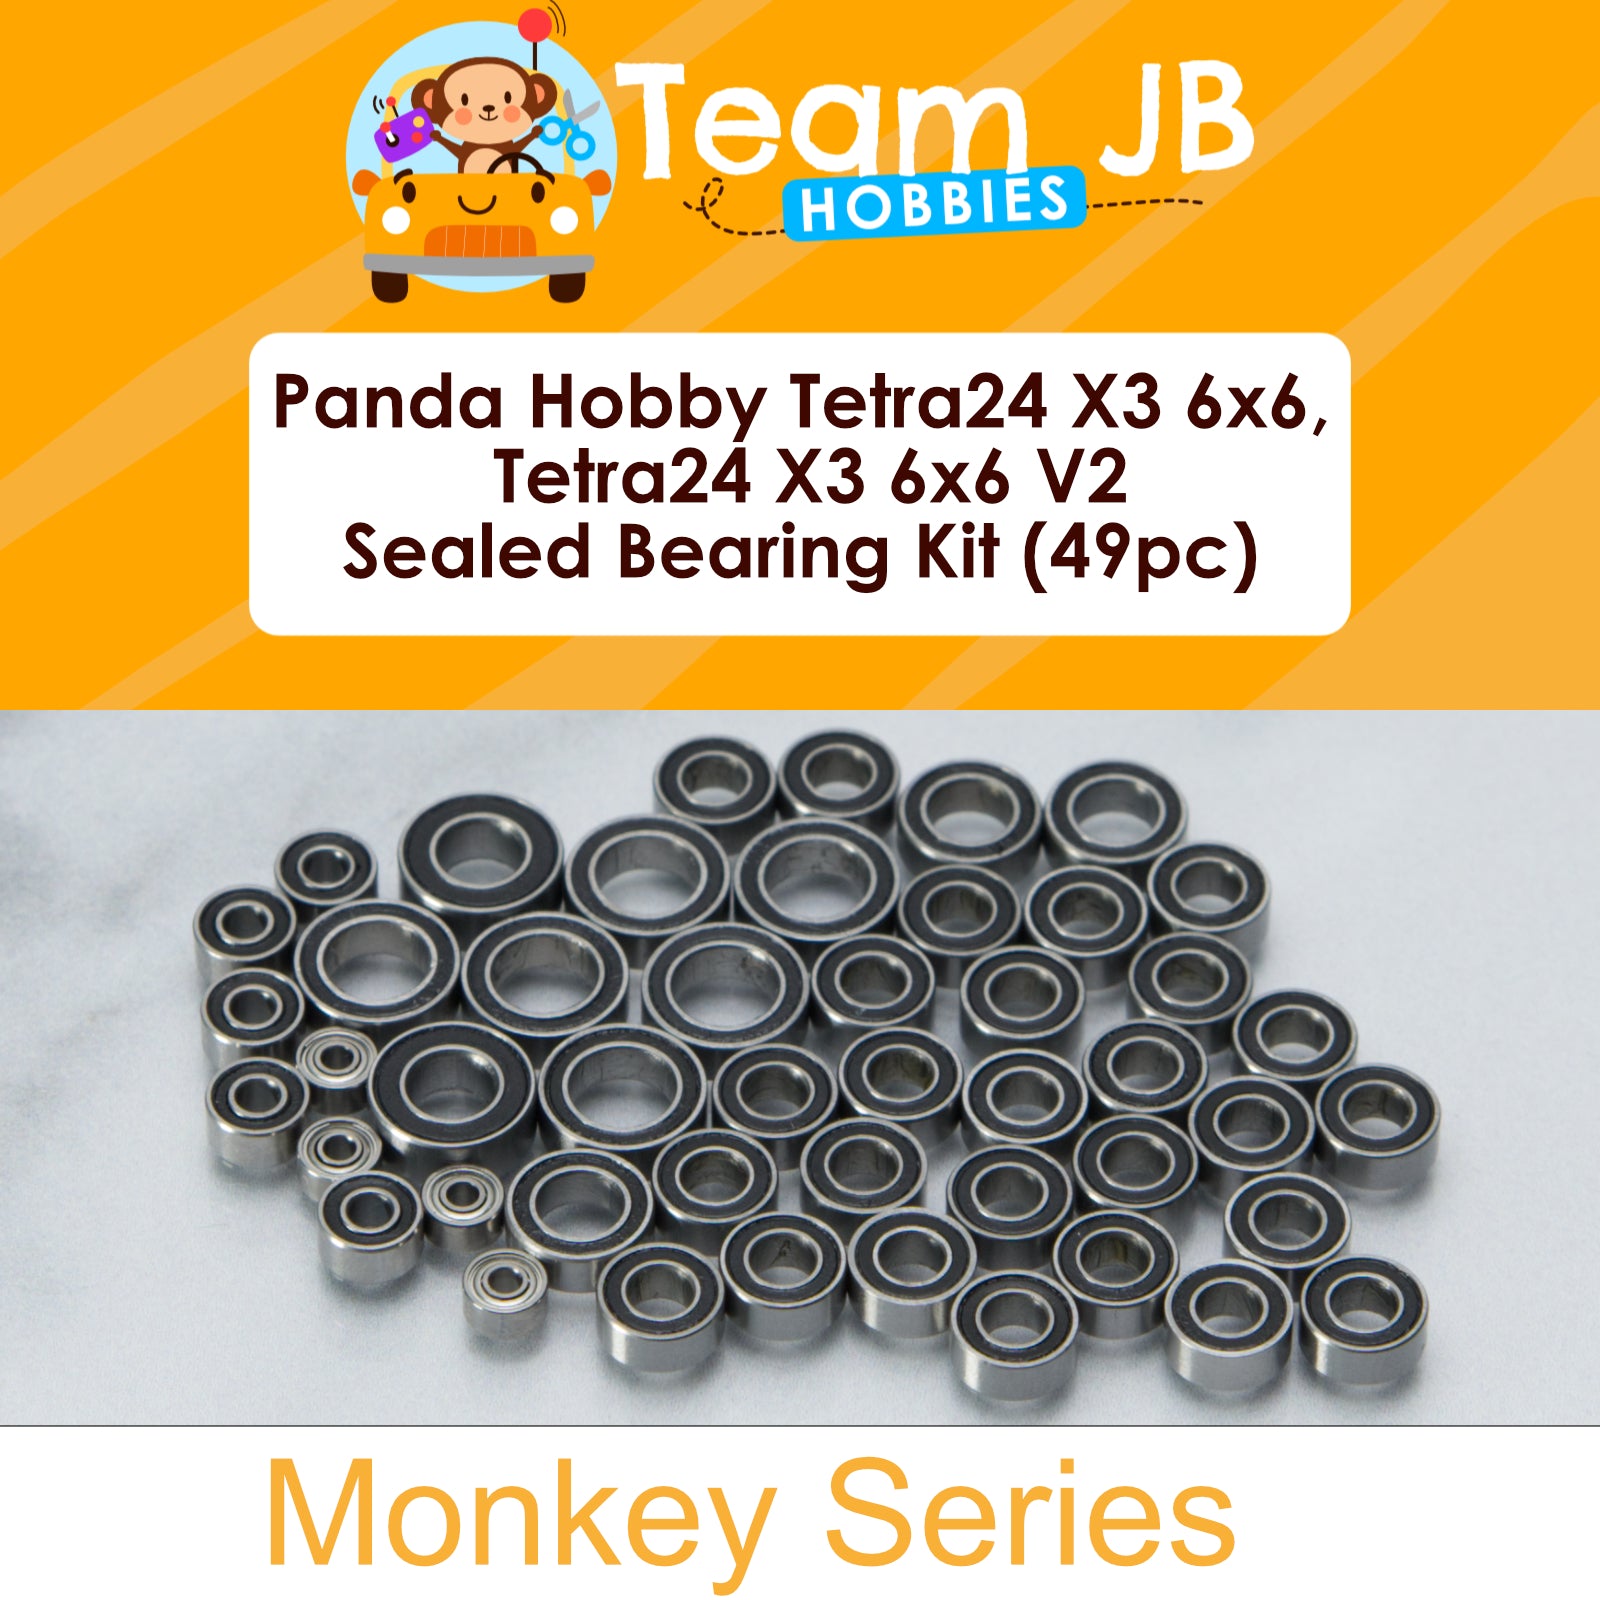 Panda Hobby Tetra24 X3 6x6, Tetra24 X3 6x6 V2 - Sealed Bearing Kit